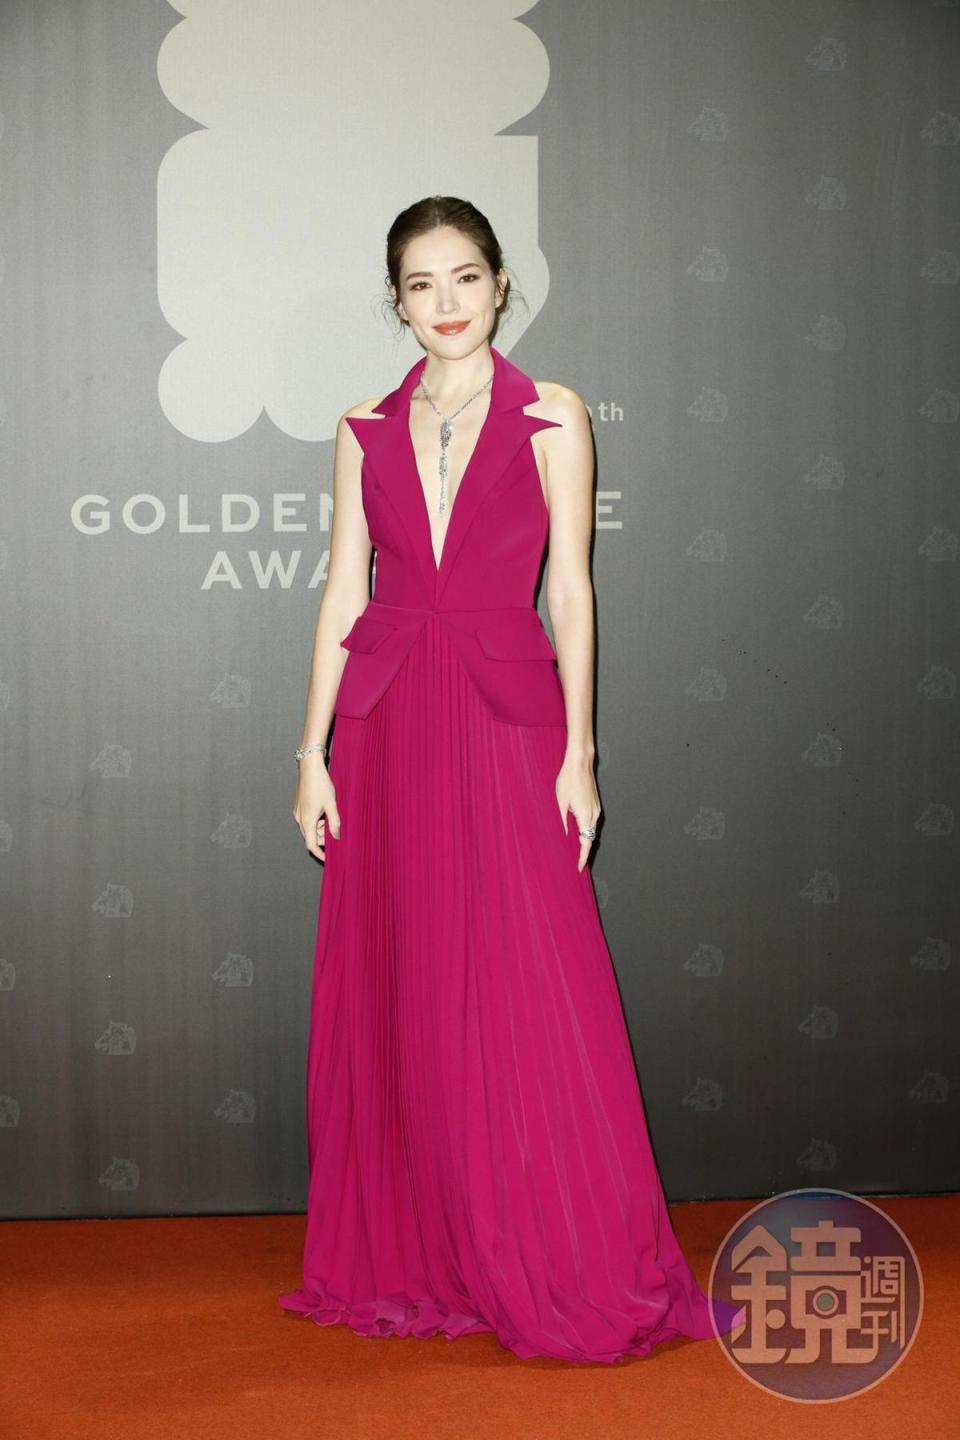 許瑋甯紫色禮服剛好襯托她的混血面孔，十分艷麗。